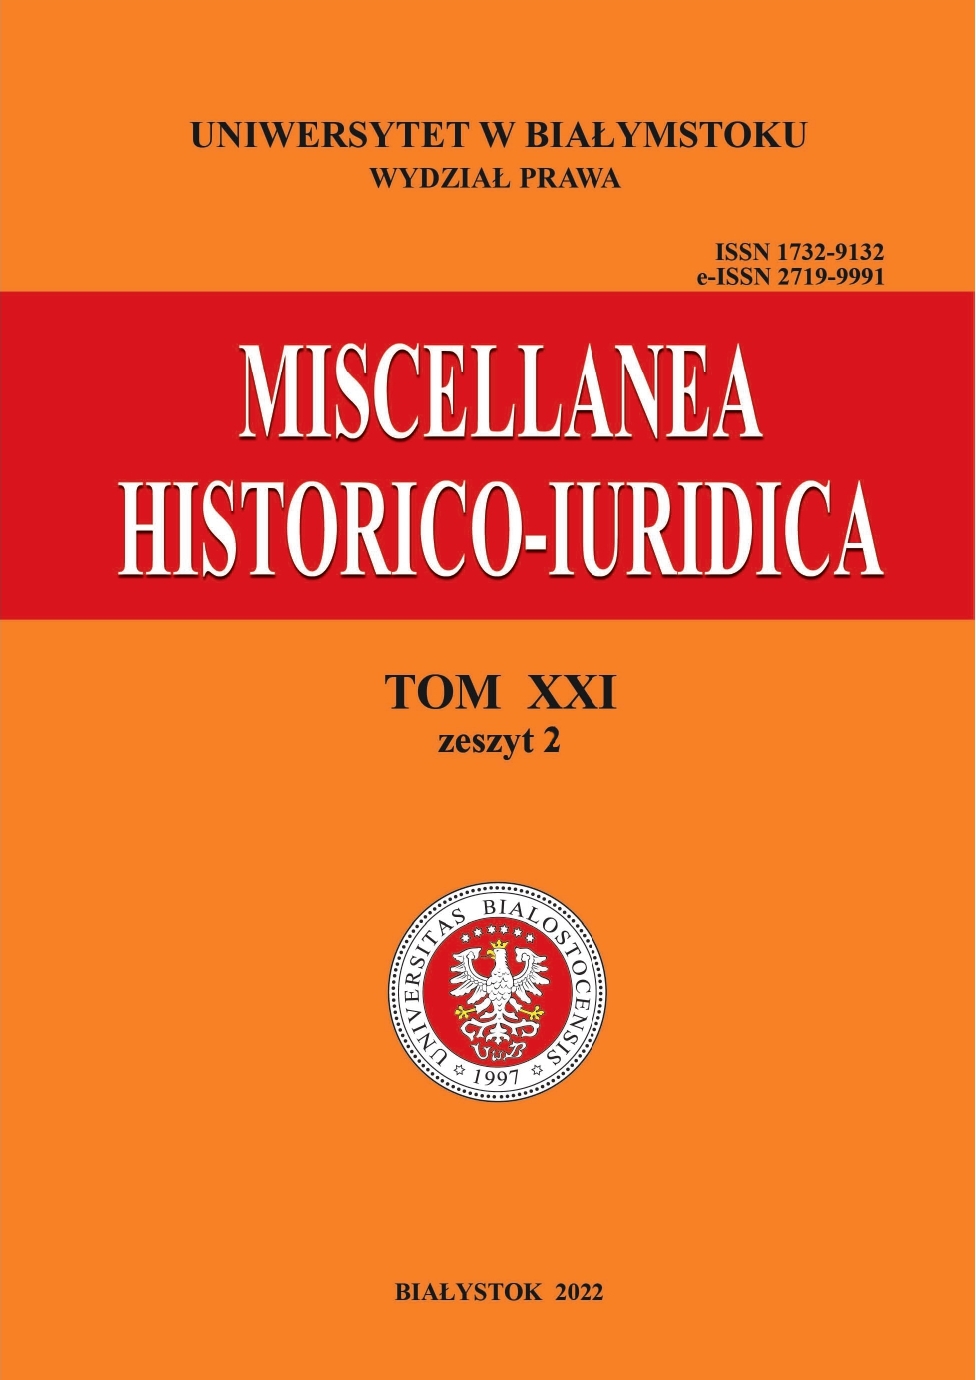 					View Vol. 21 No. 2 (2022): Miscellanea Historico-Iuridica Vol. XXI No. 2
				